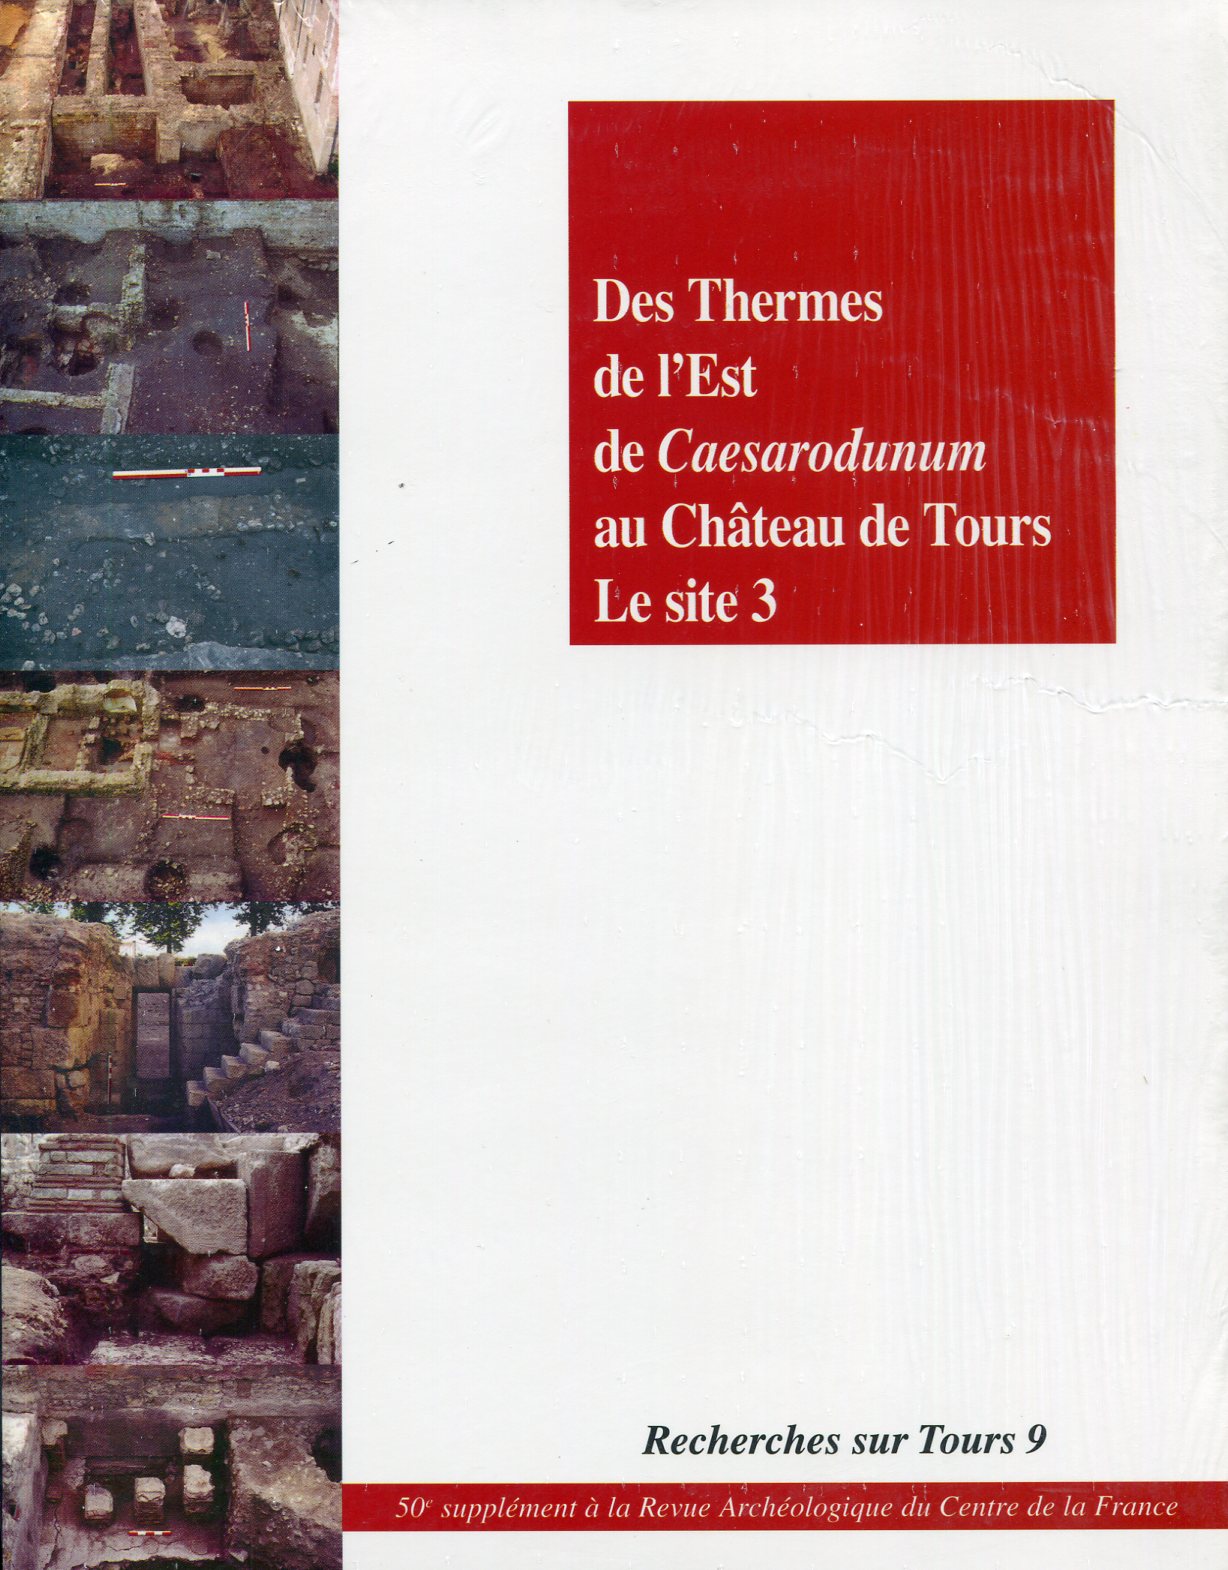 Des Thermes de l'Est de Caesarodunum au Château de Tours. Le site 3, (Recherches sur Tours 9), (50e Suppl. RACF), 2014, 180 p.